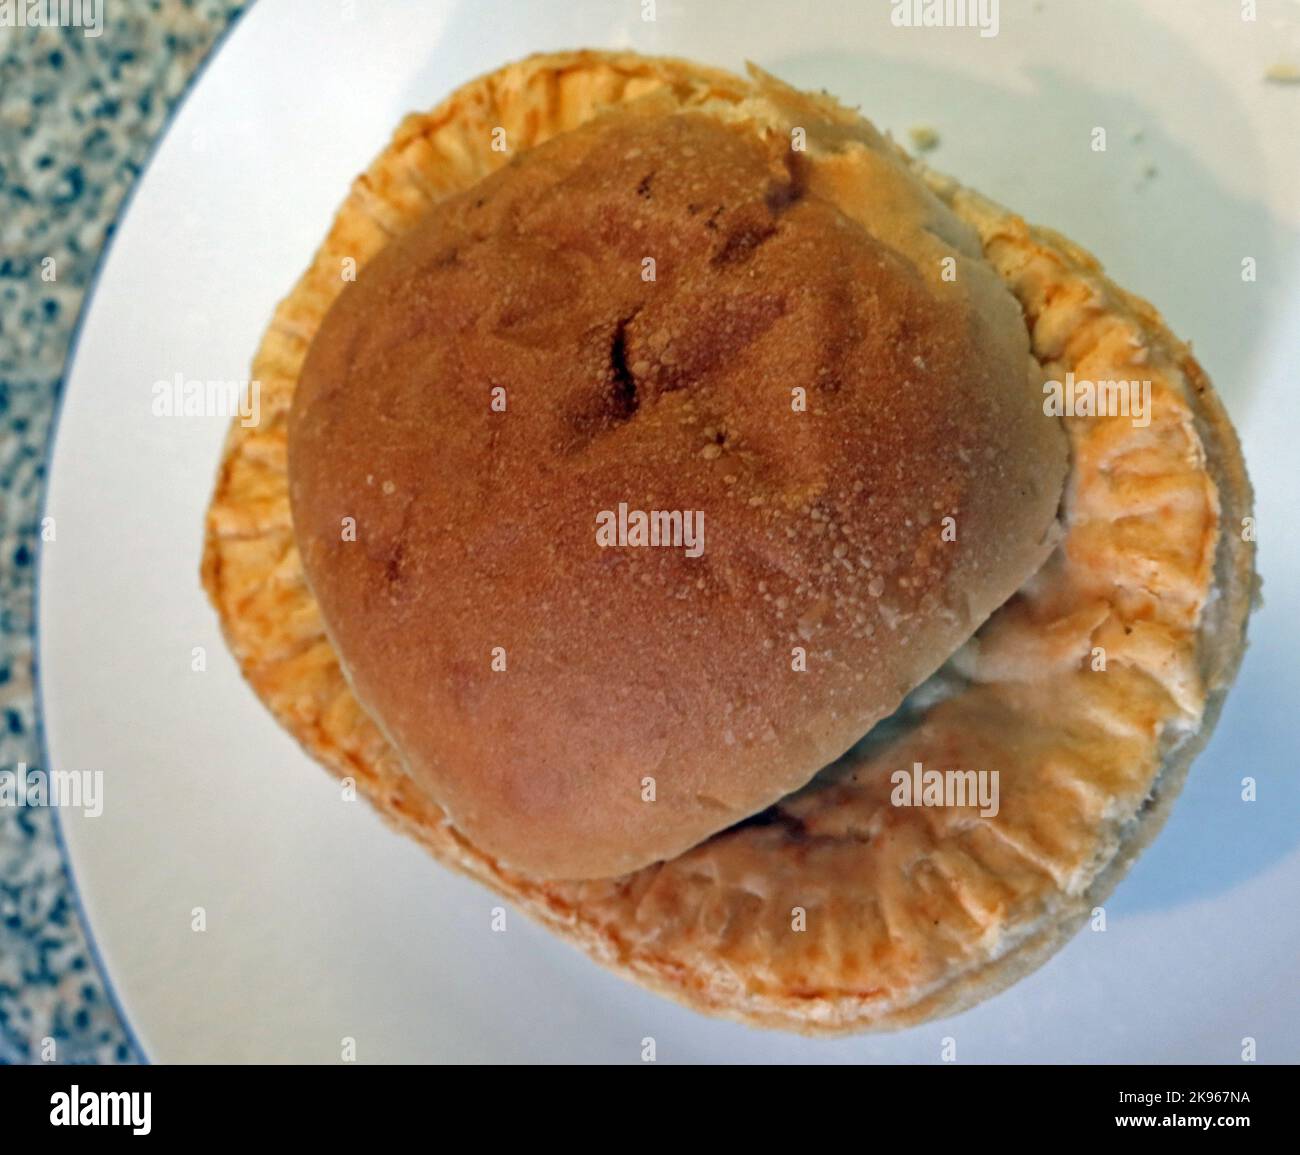 Wigan Lancashire Pie Burger, ein Steak- oder Fleischkuchen auf einem Muffin im Ofen Stockfoto